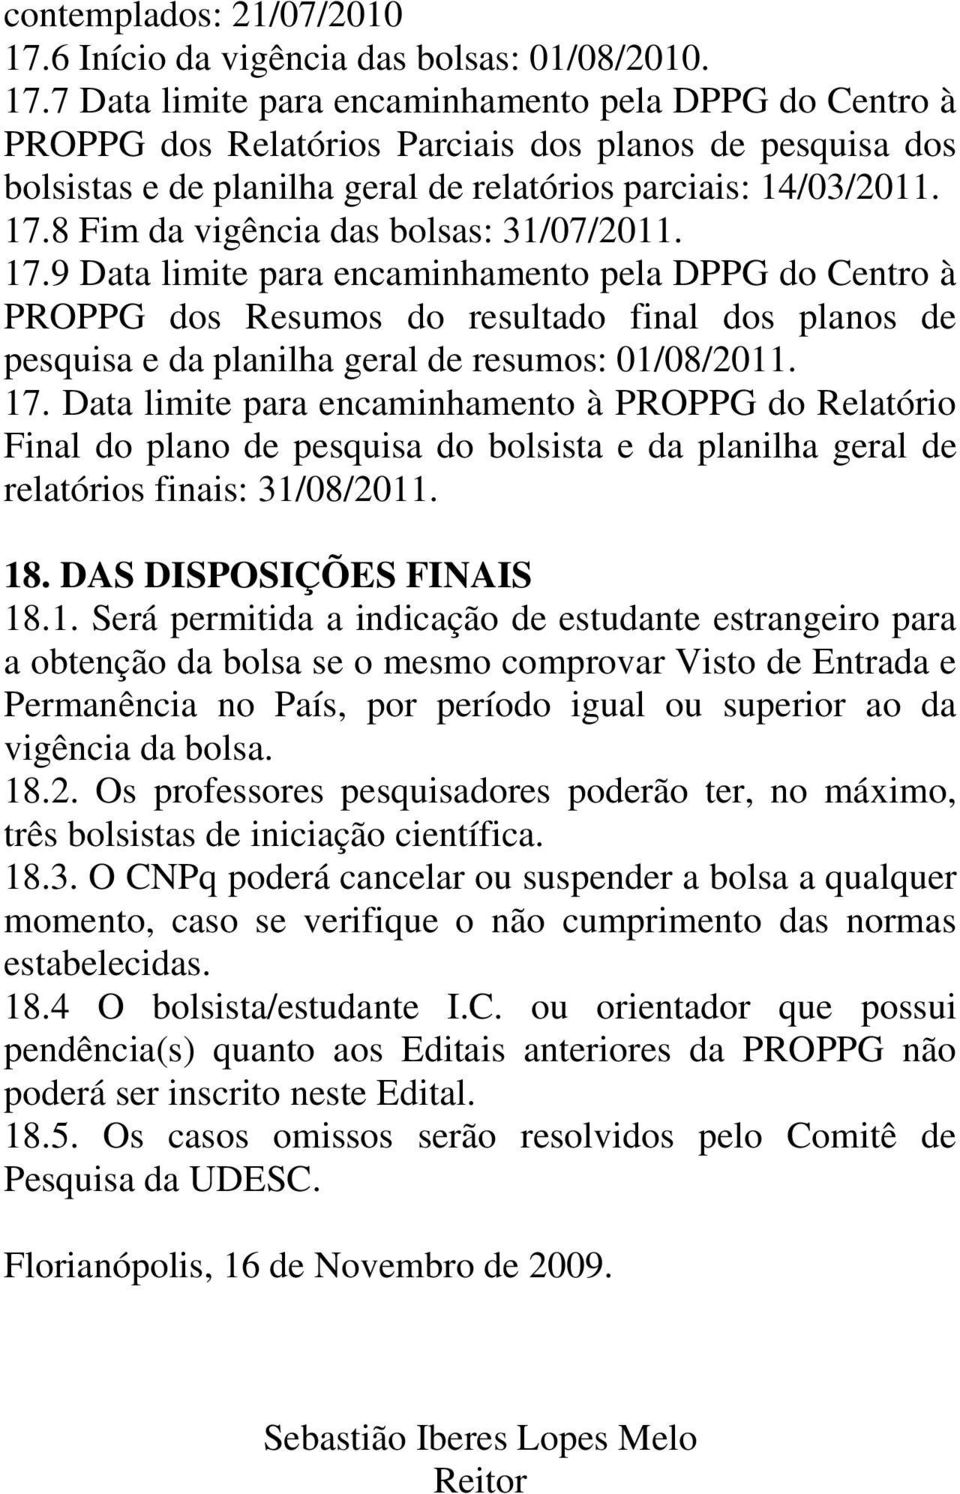 7 Data limite para encaminhamento pela DPPG do Centro à PROPPG dos Relatórios Parciais dos planos de pesquisa dos bolsistas e de planilha geral de relatórios parciais: 14/03/2011. 17.